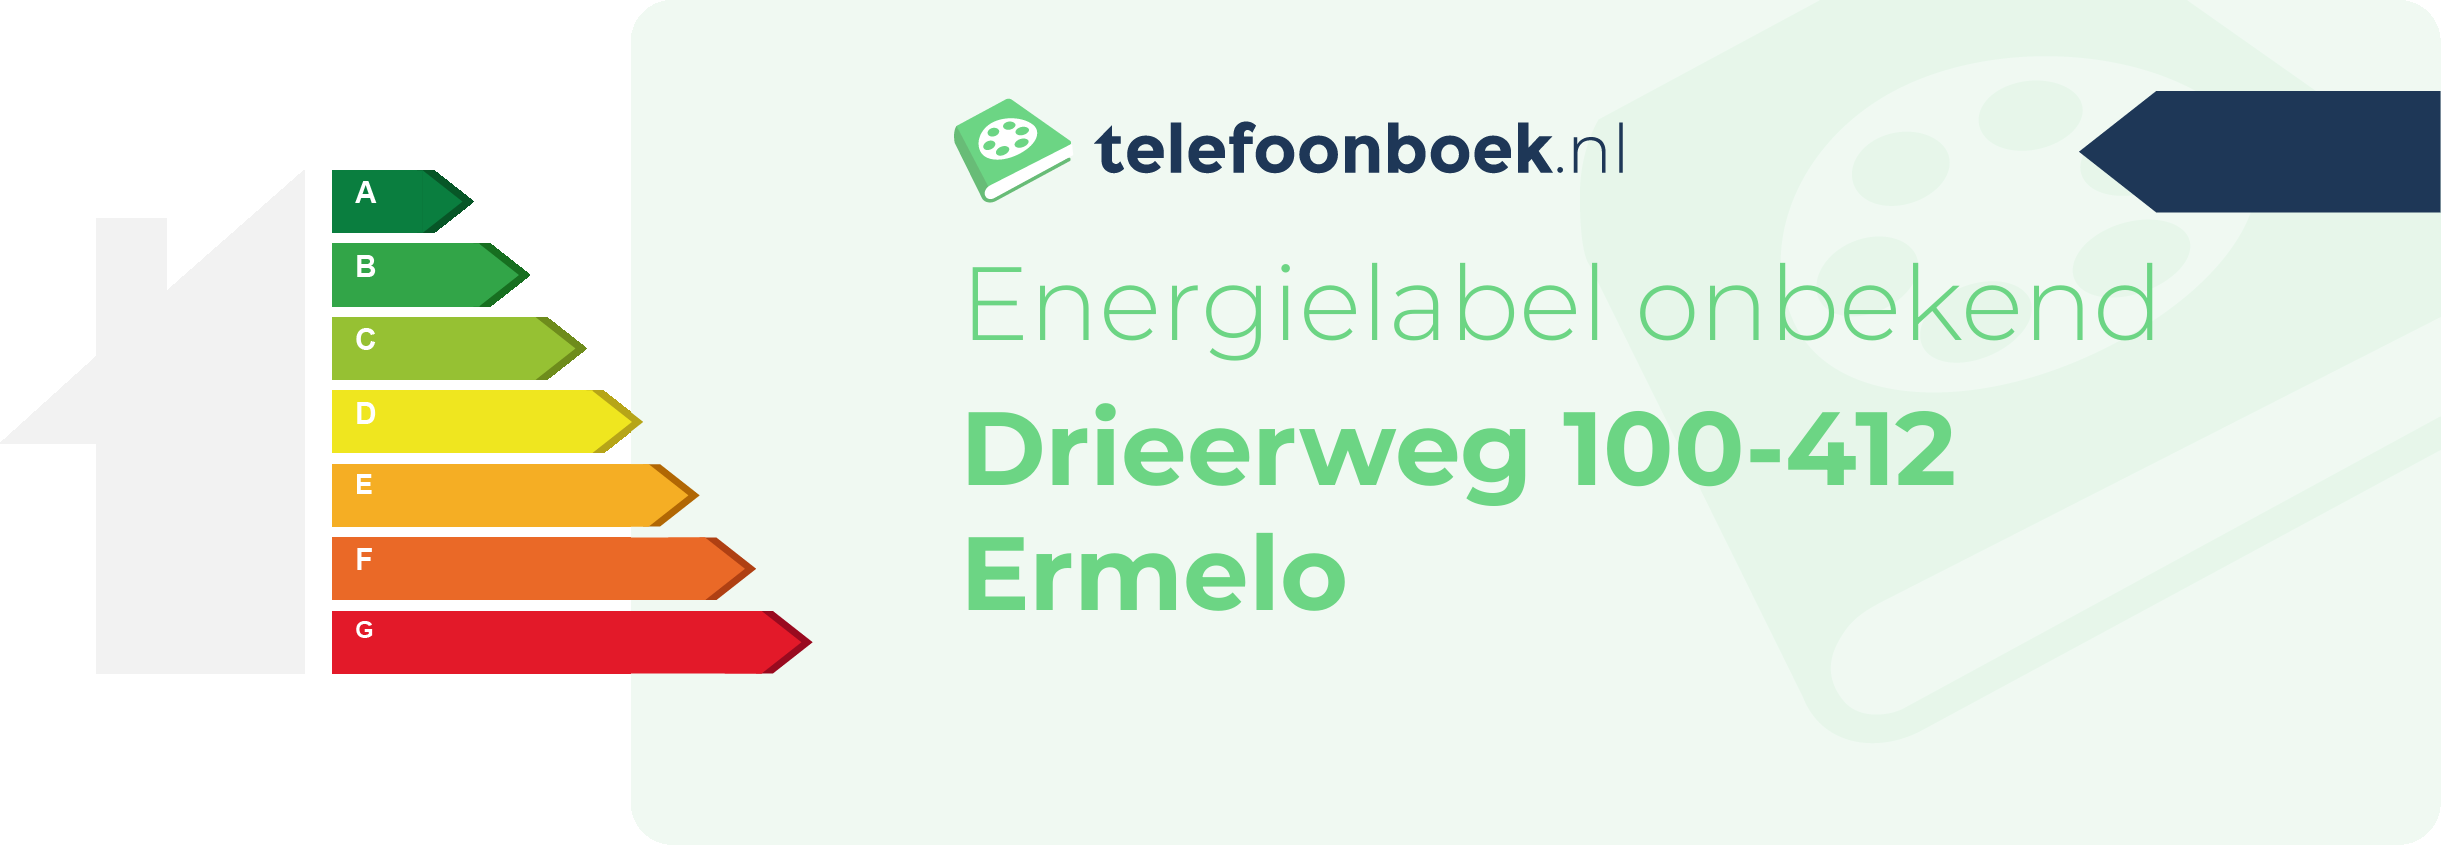 Energielabel Drieerweg 100-412 Ermelo